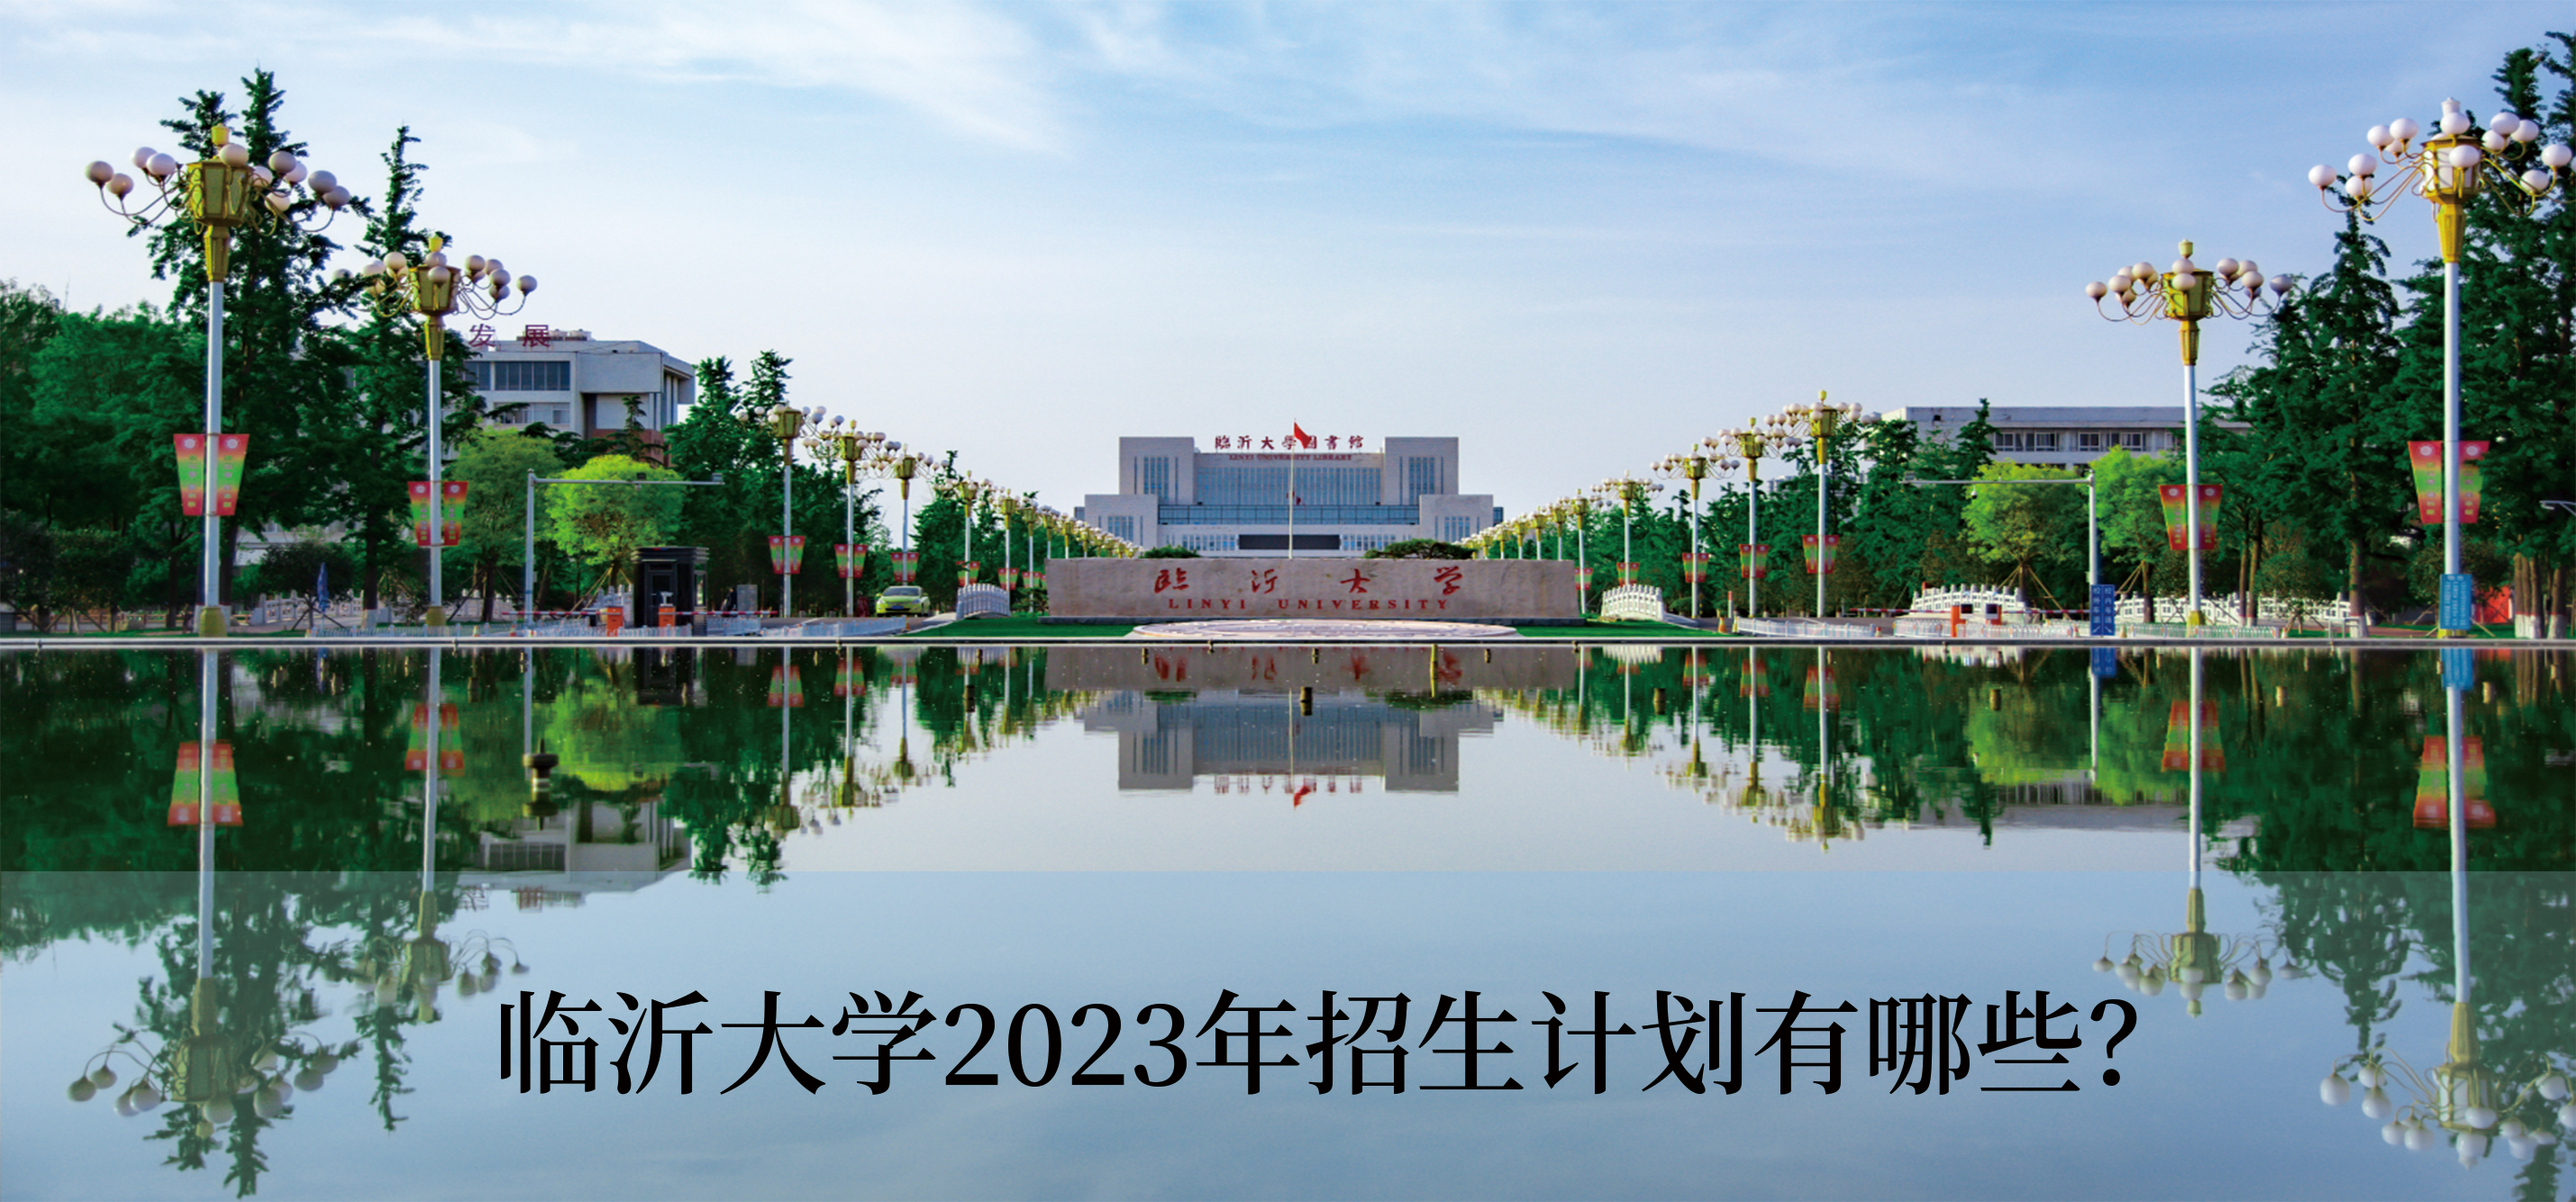 临沂大学2023年招生计划有哪些?